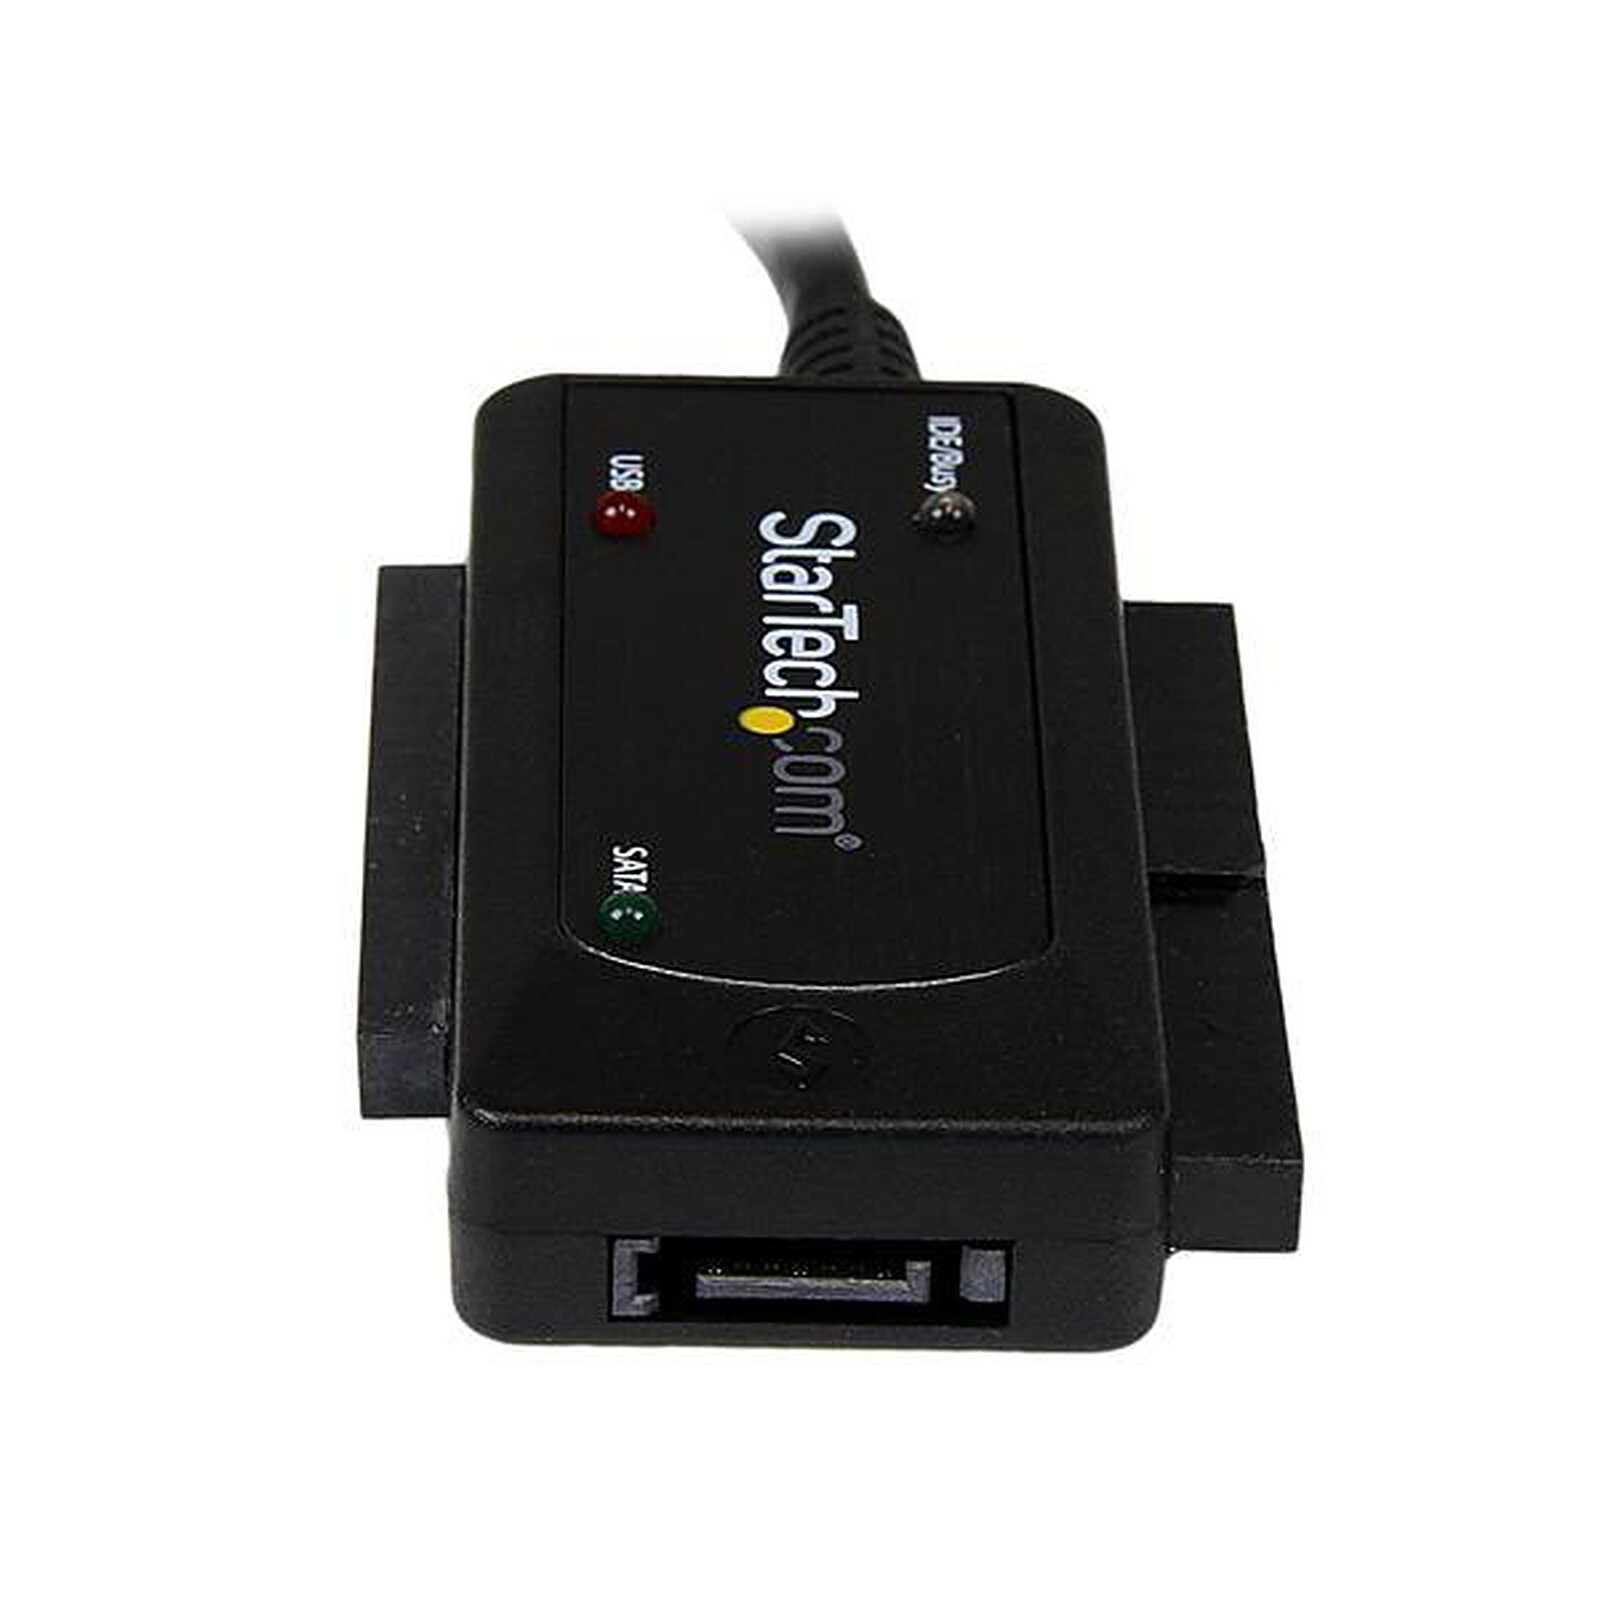 L'adaptateur SATA USB 3.0 pour Serial ATA de Câble de